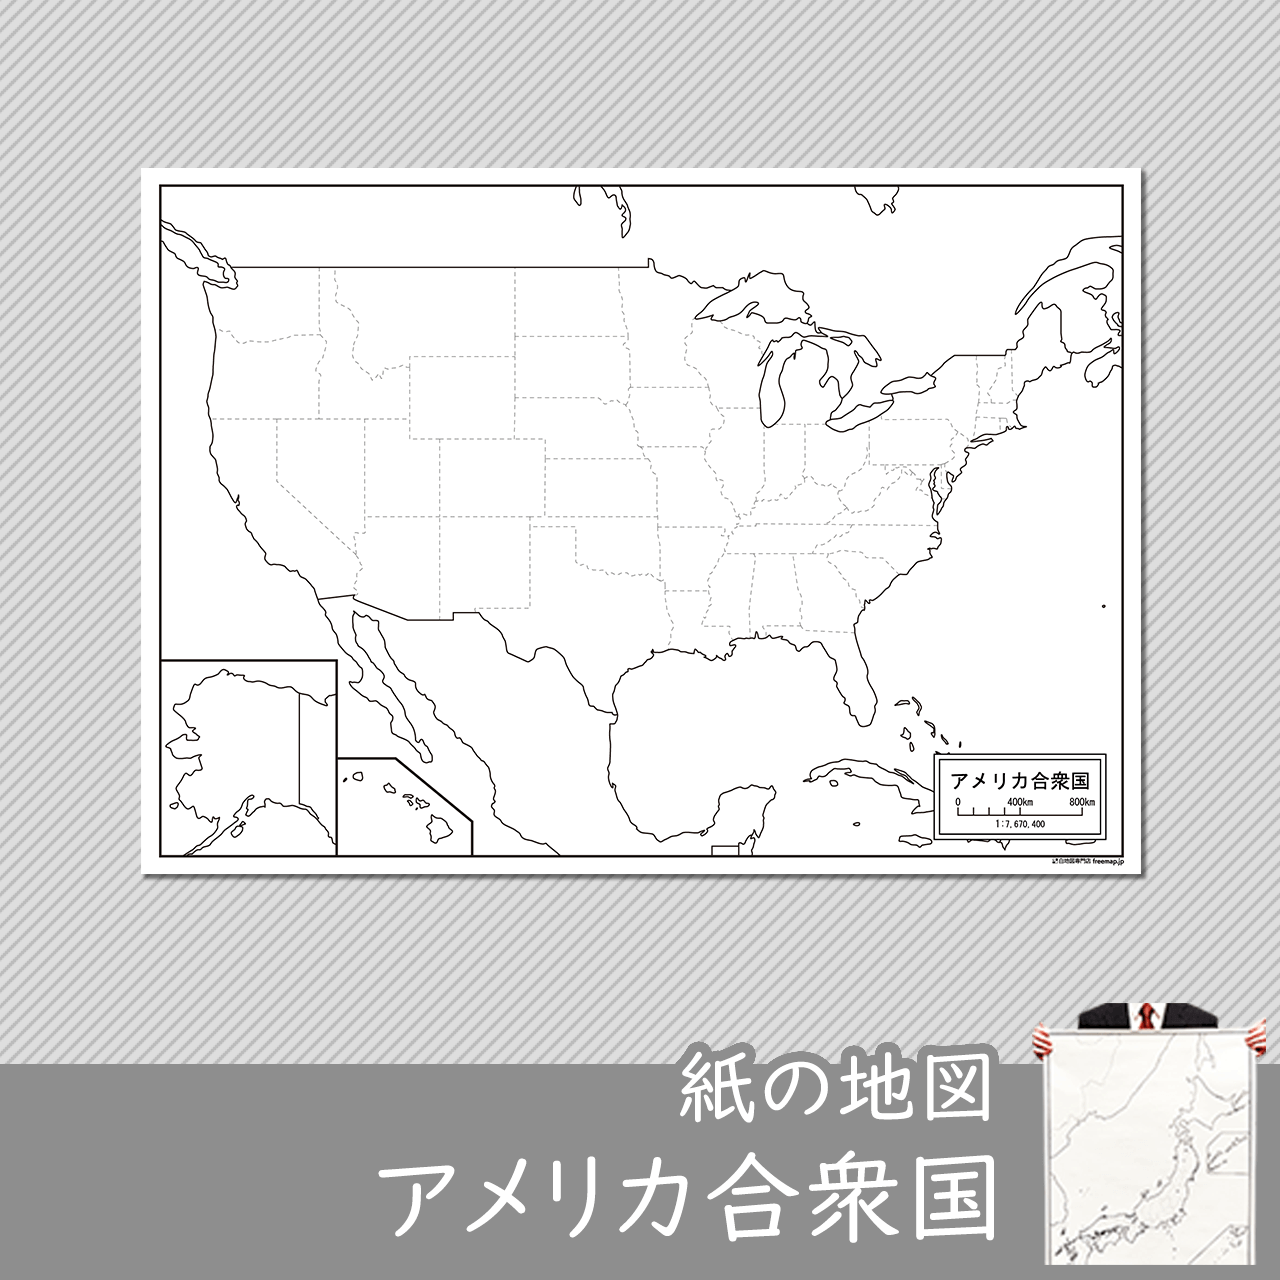 アメリカ合衆国の紙の白地図のサムネイル